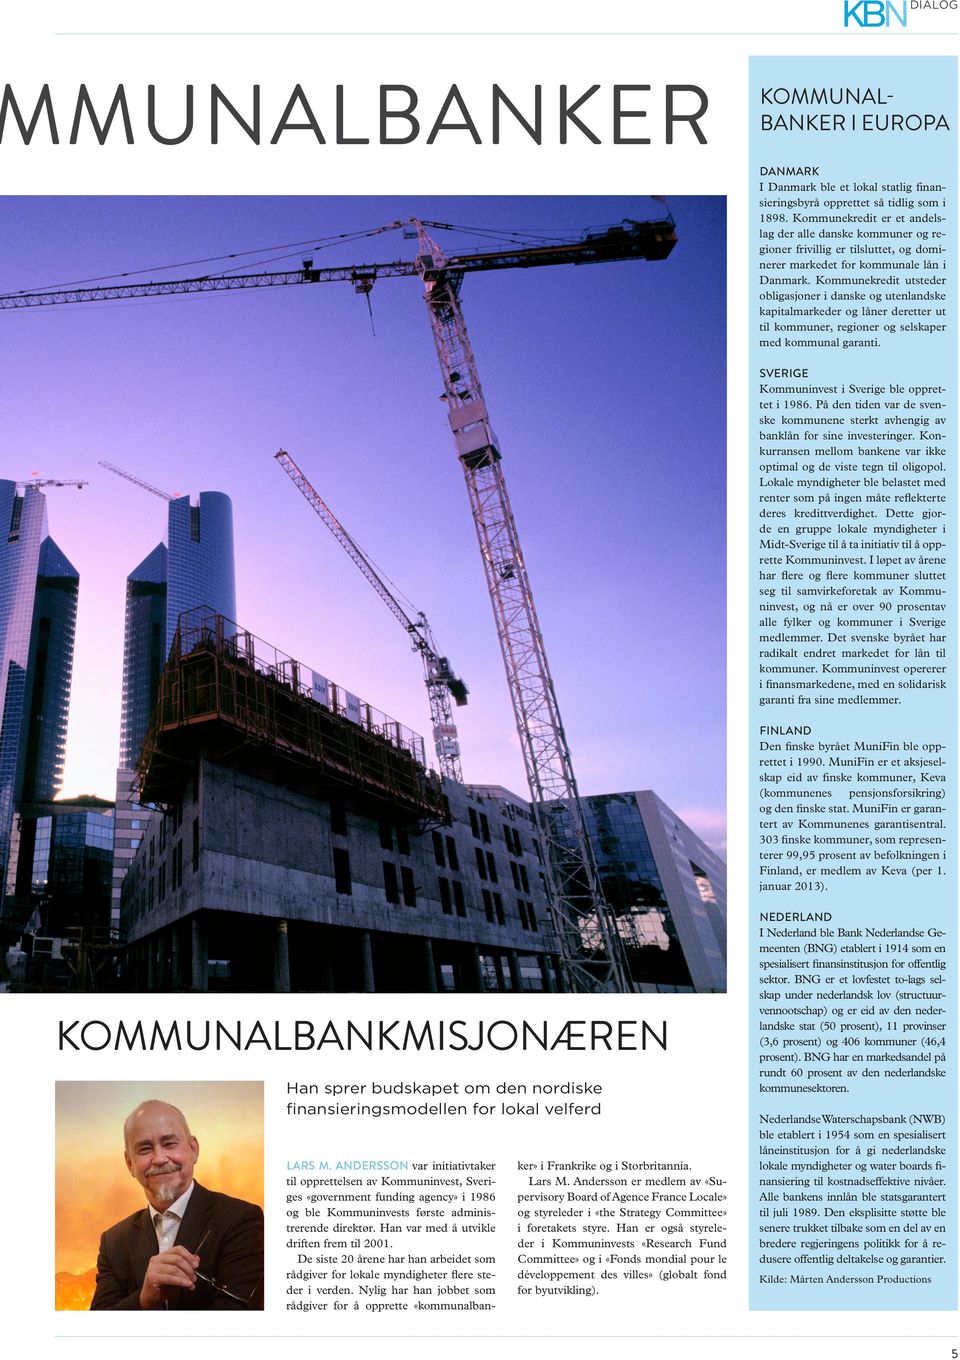 Kommunekredit utsteder obligasjoner i danske og utenlandske kapitalmarkeder og låner deretter ut til kommuner, regioner og selskaper med kommunal garanti.